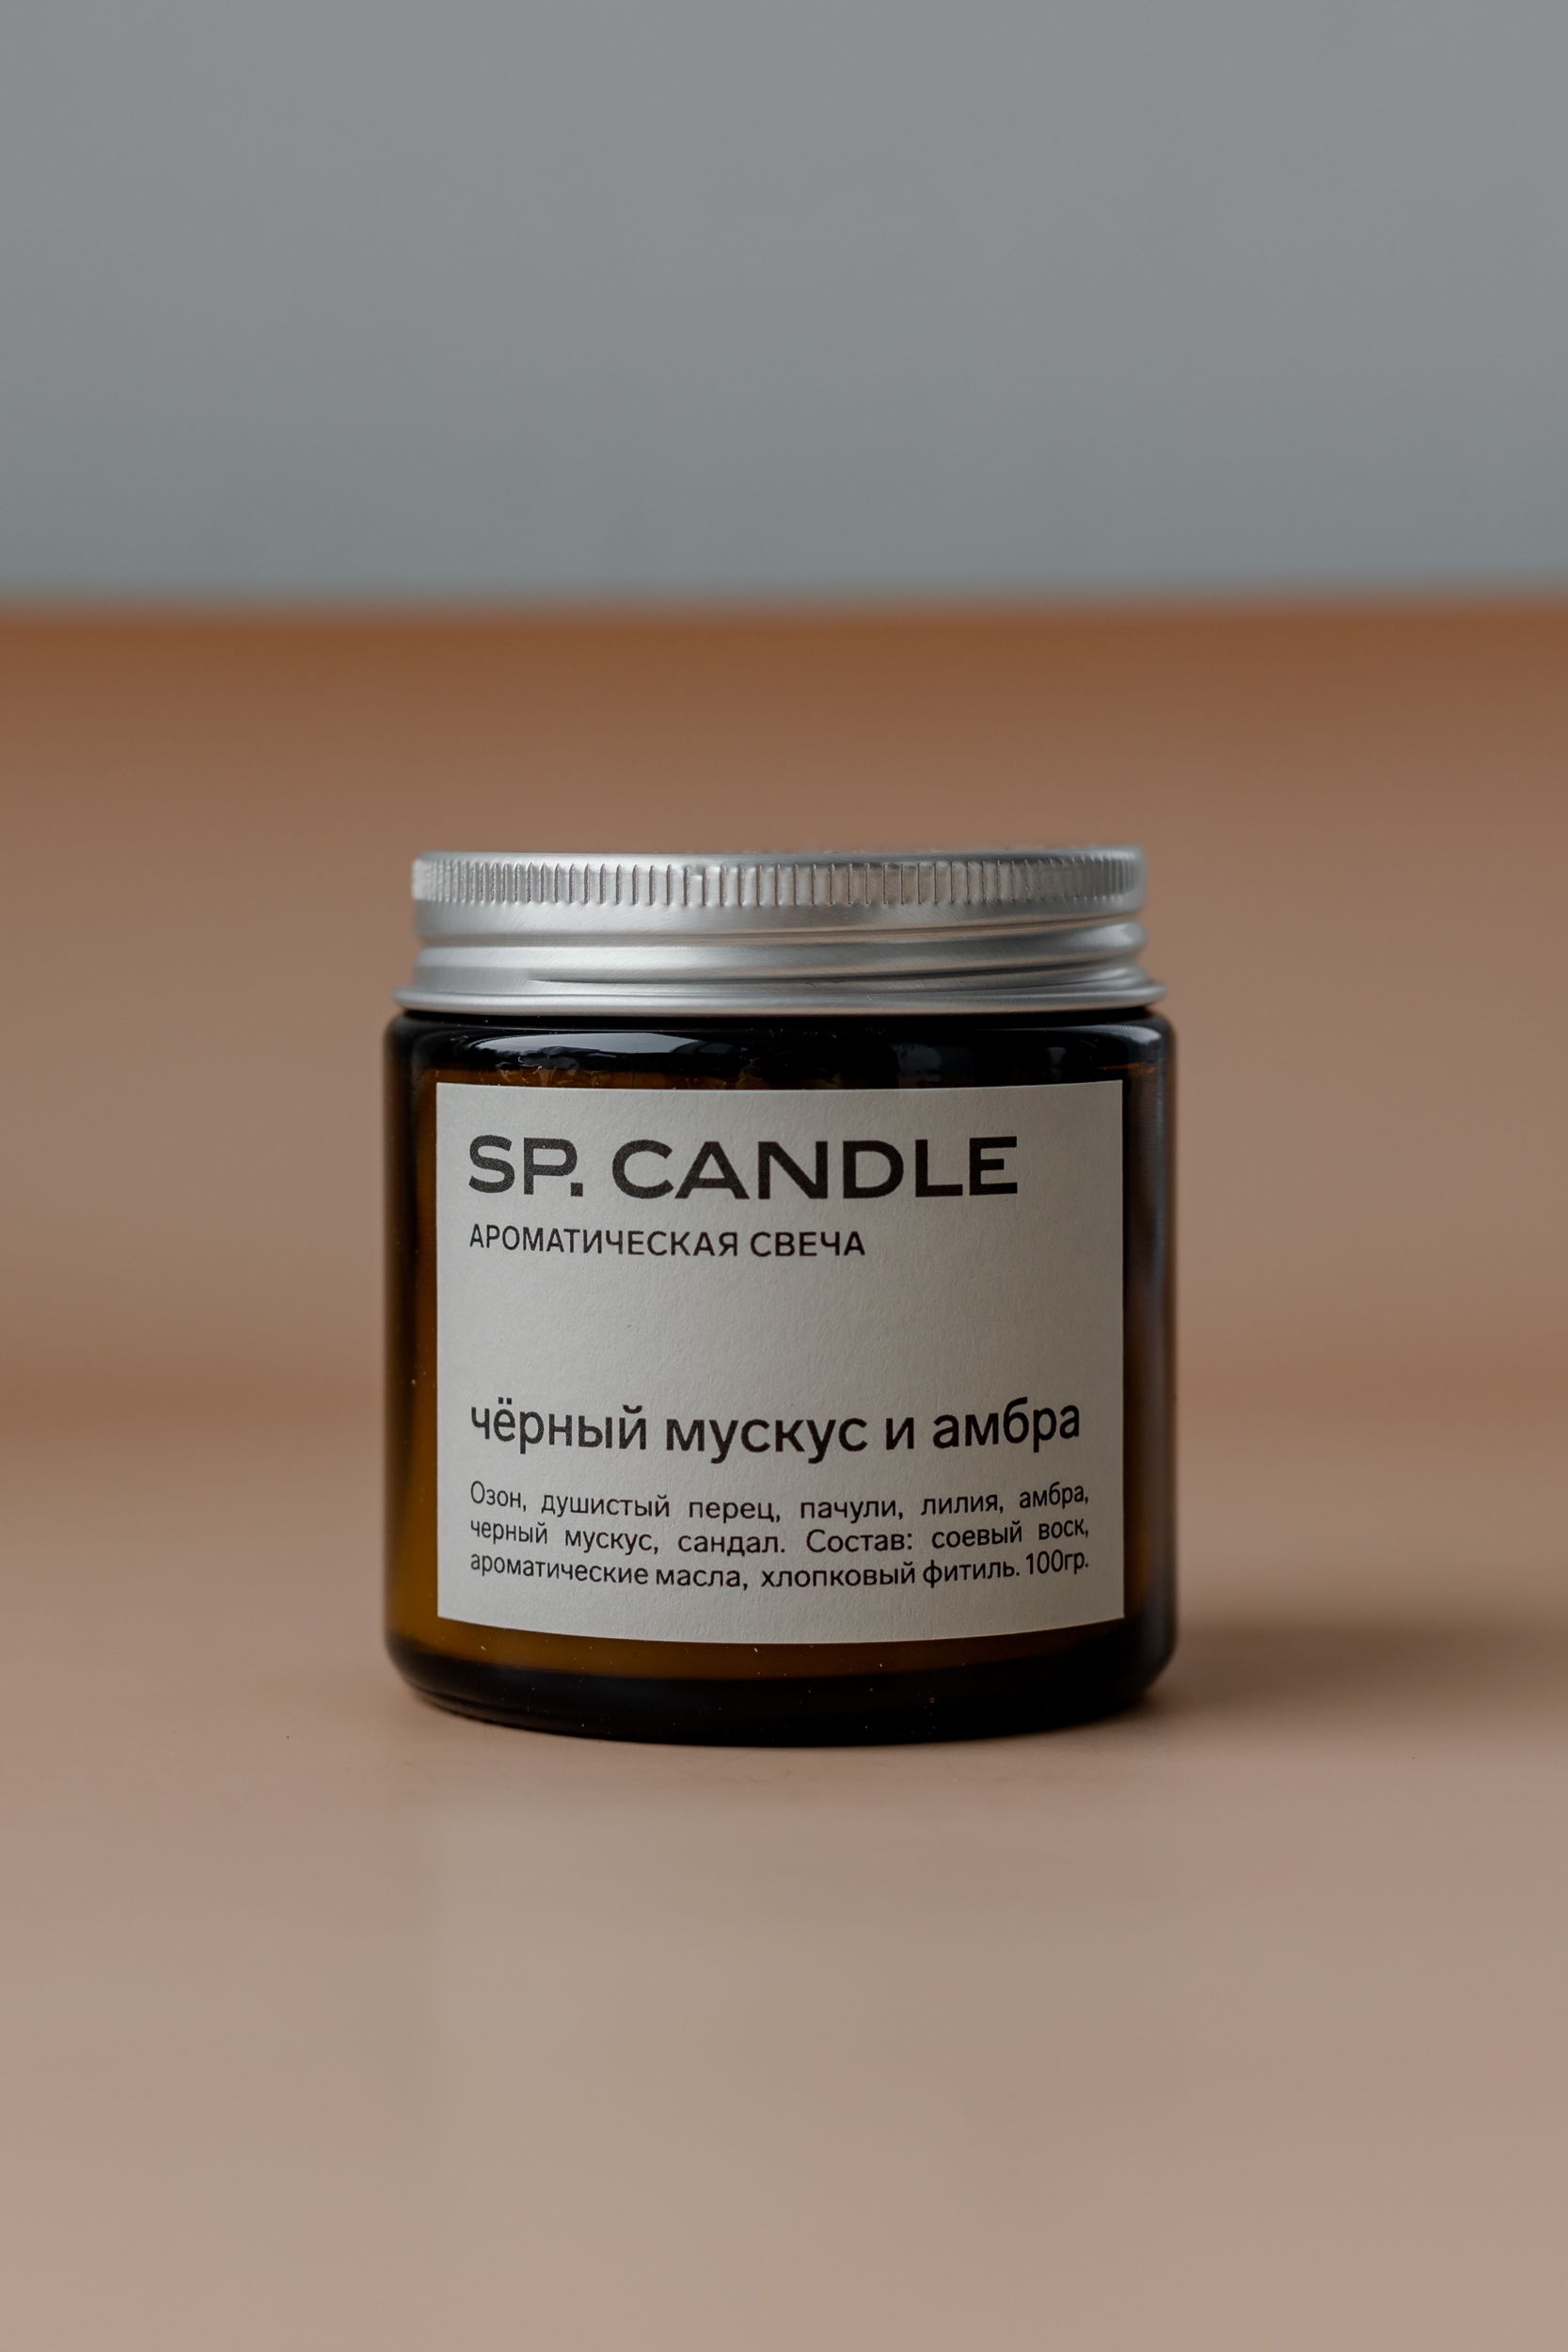 SP. CANDLE Ароматическая свеча Черный мускус и амбра, 100г - фото 1